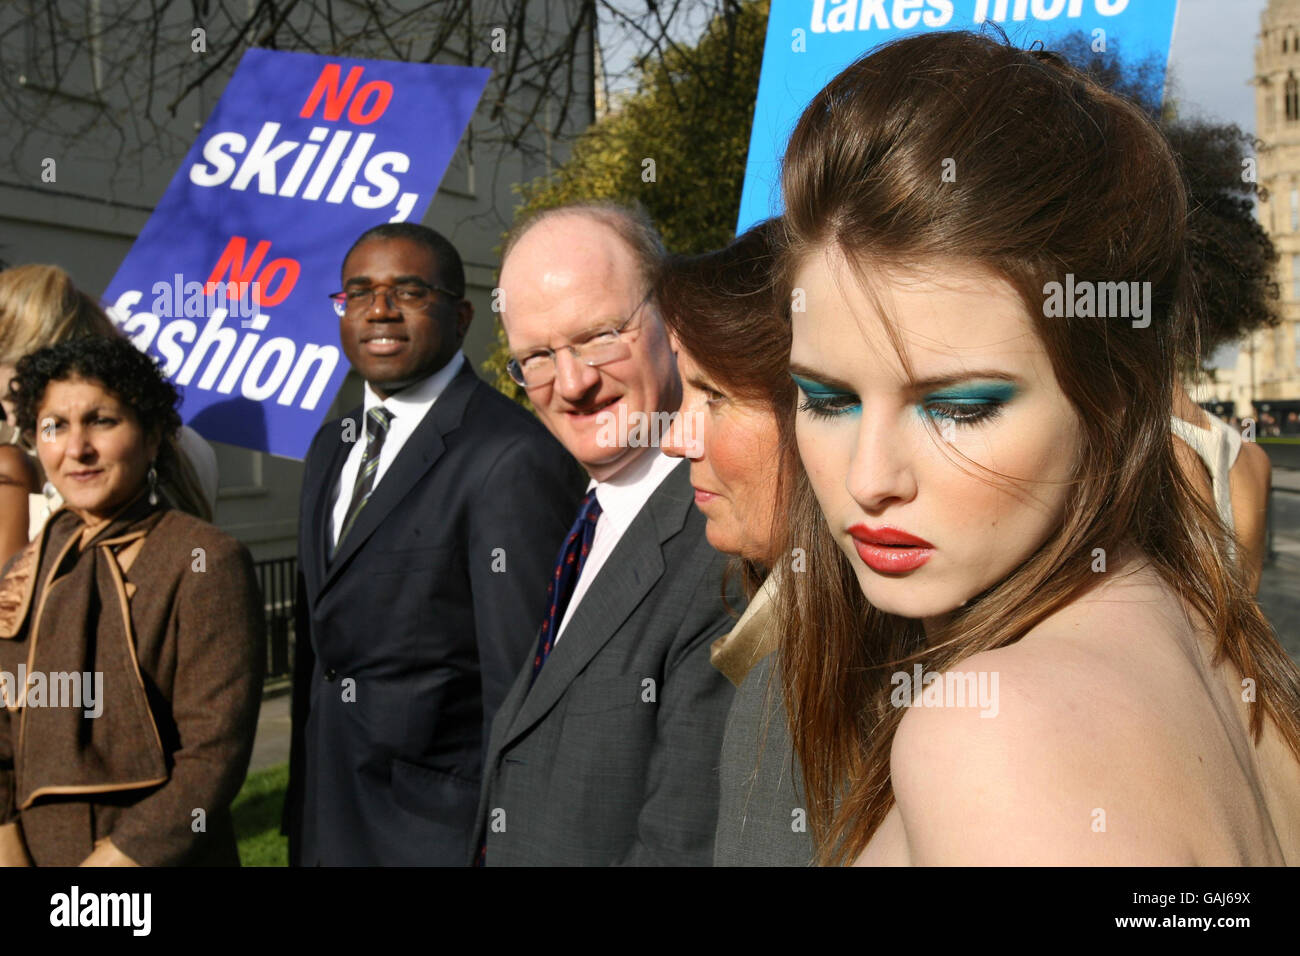 'No hay habilidades, No de moda' de protesta - Londres Foto de stock